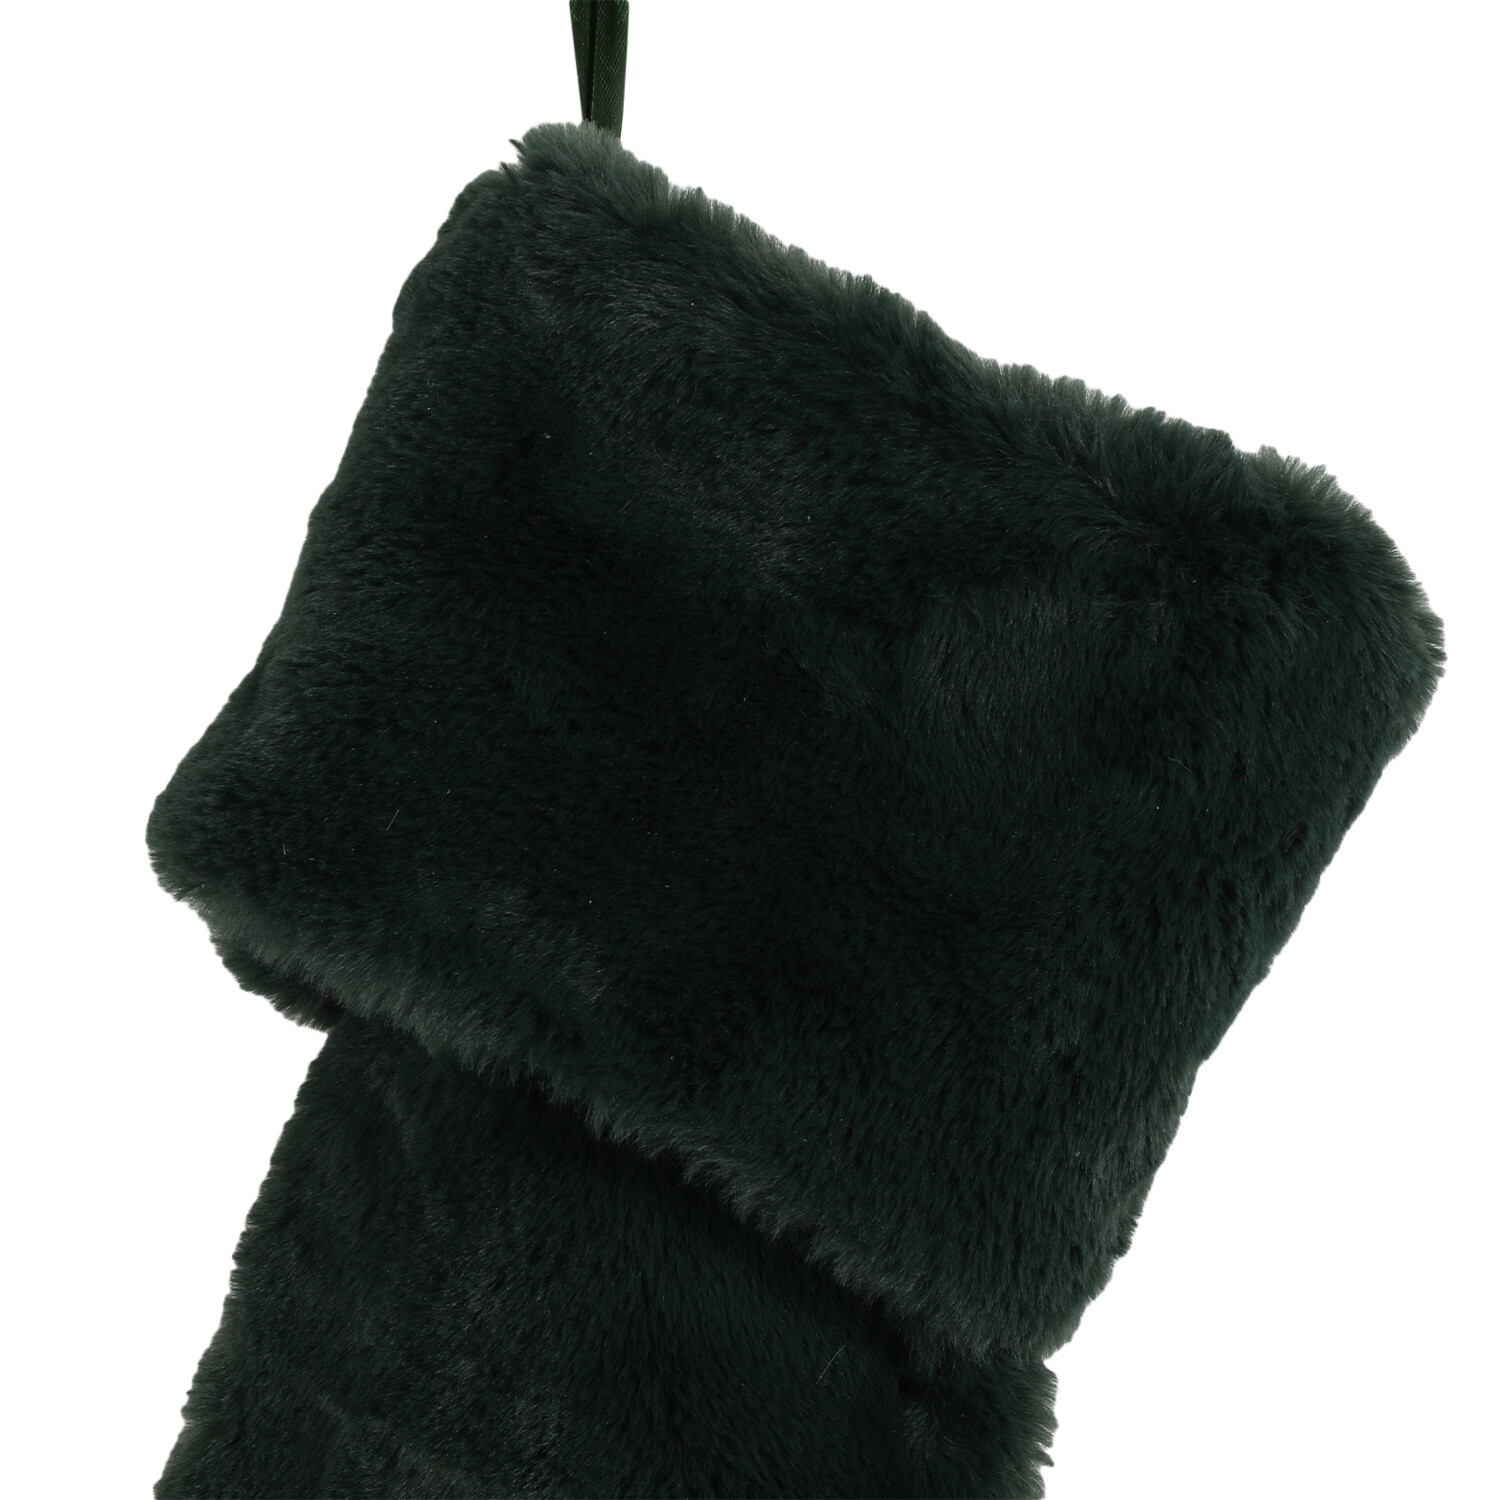 Green Faux Fur Stocking Image 3